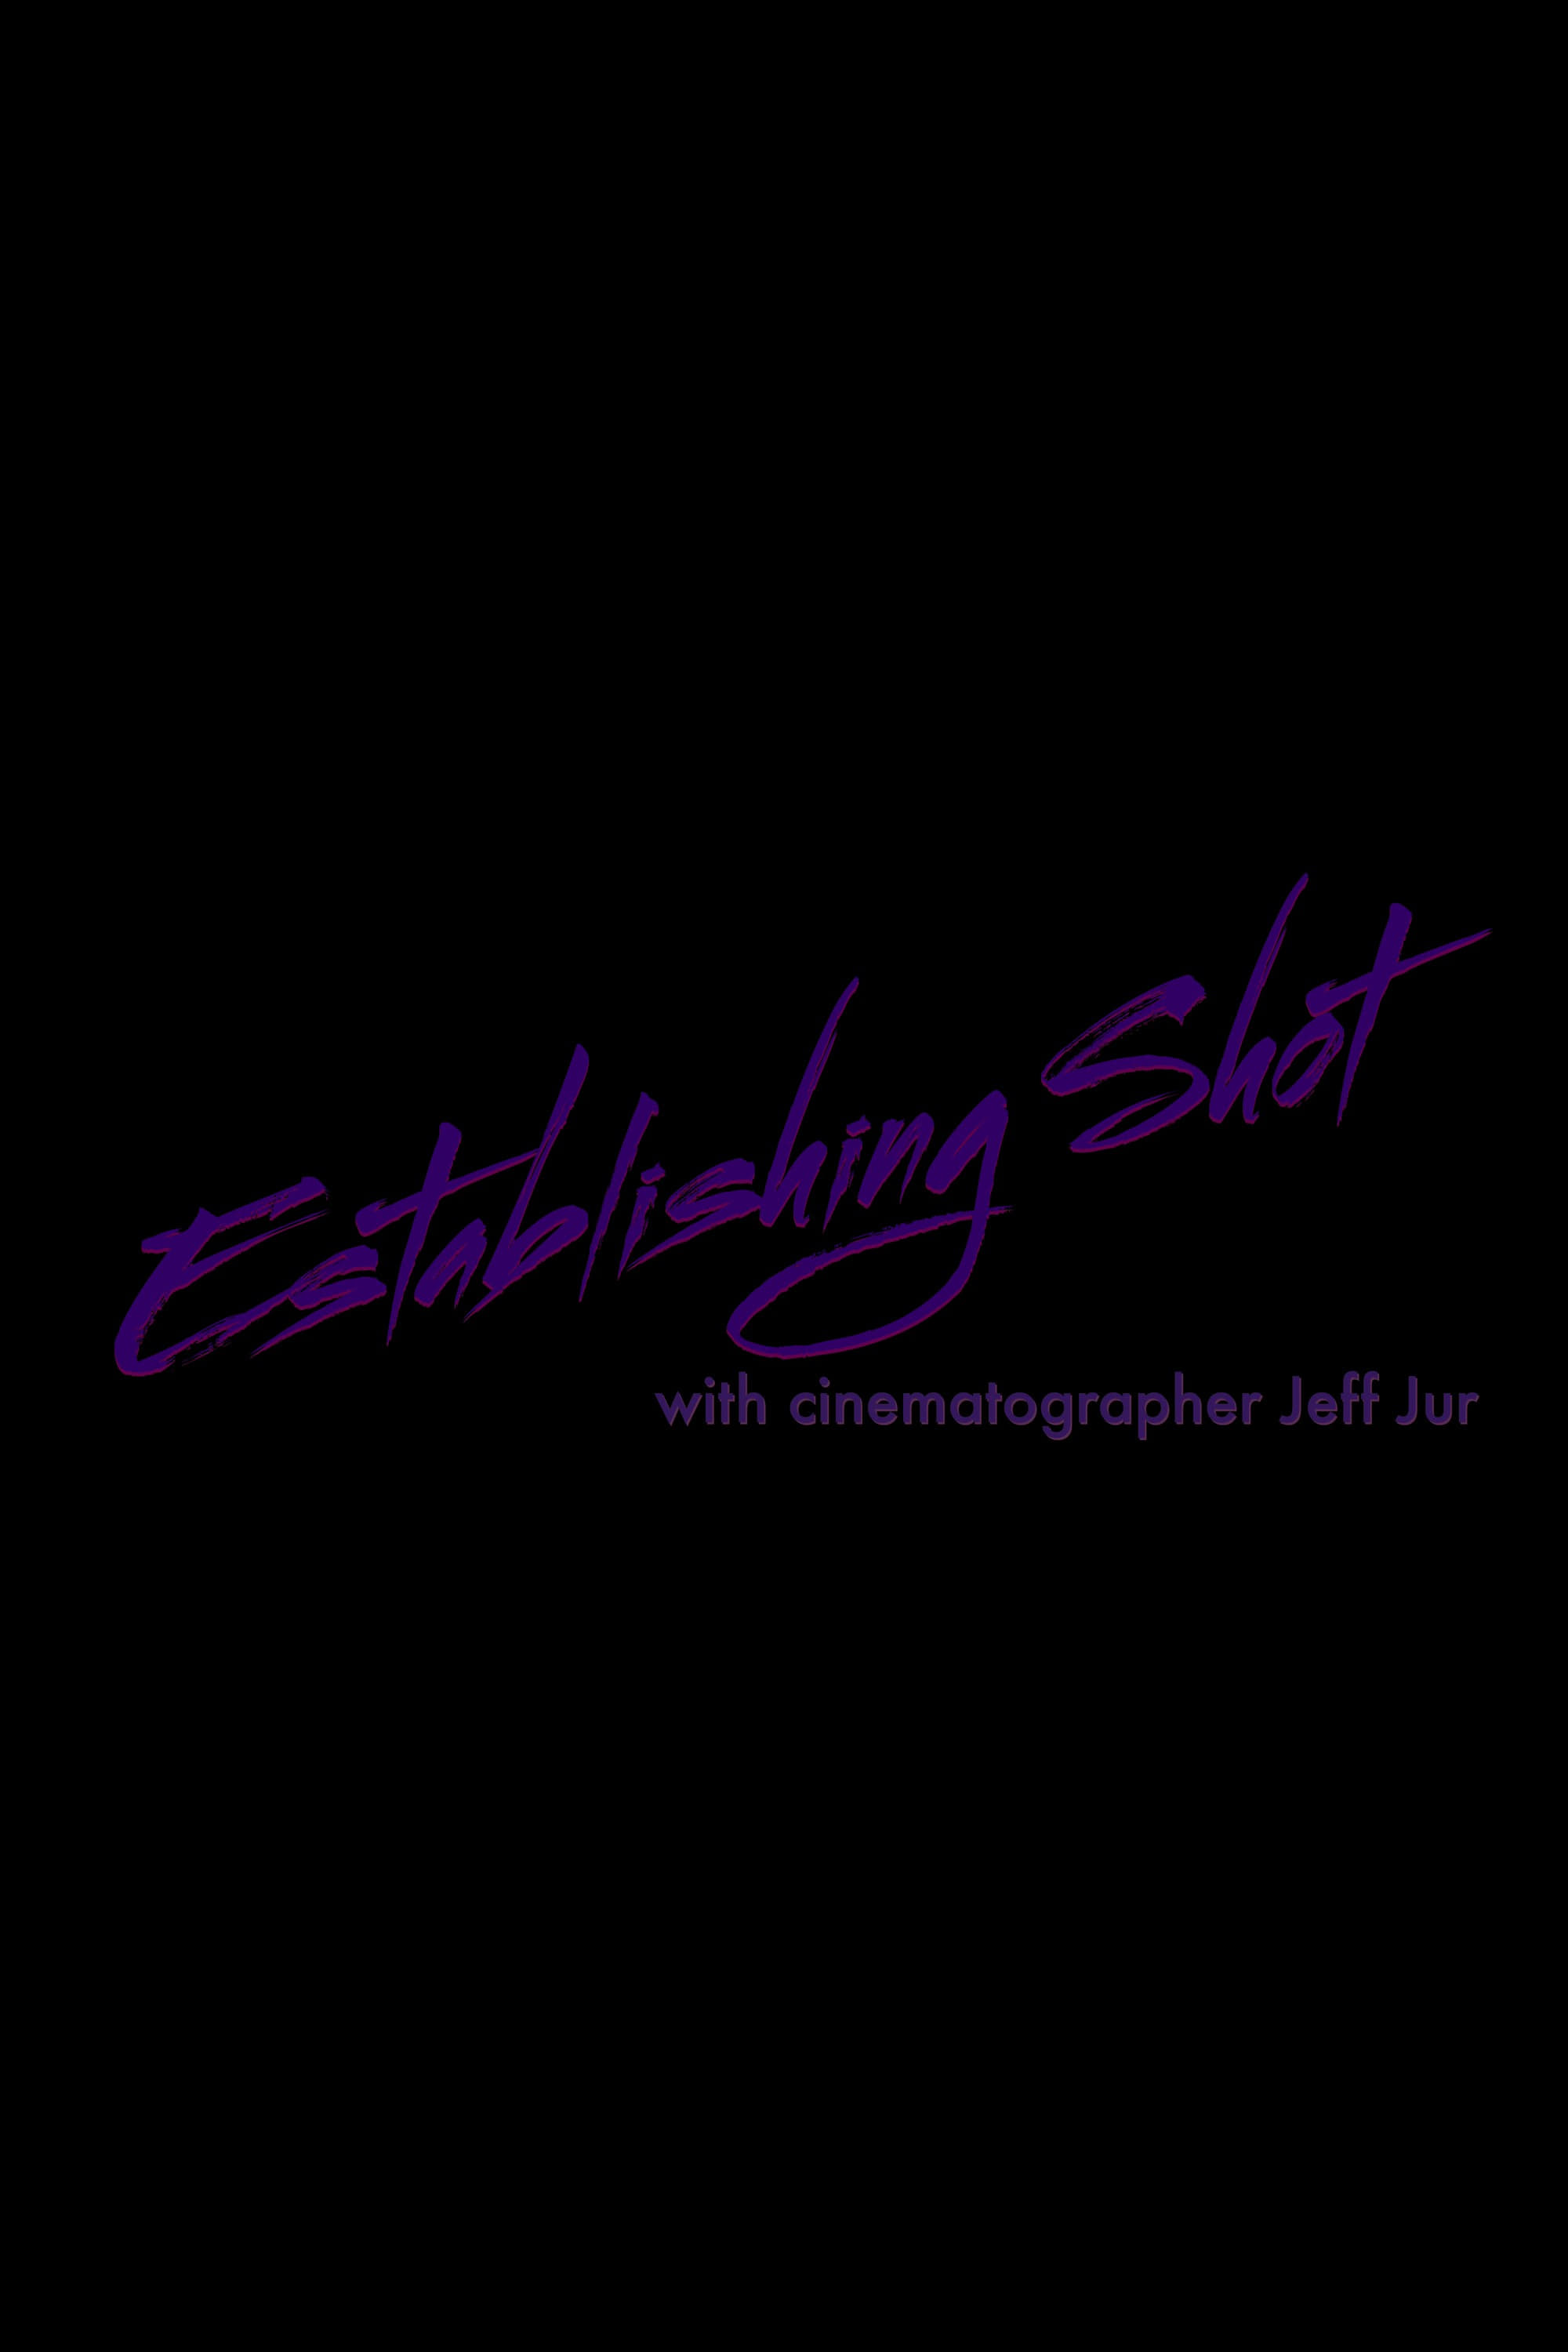 Establishing Shot with Cinematographer Jeff Jur